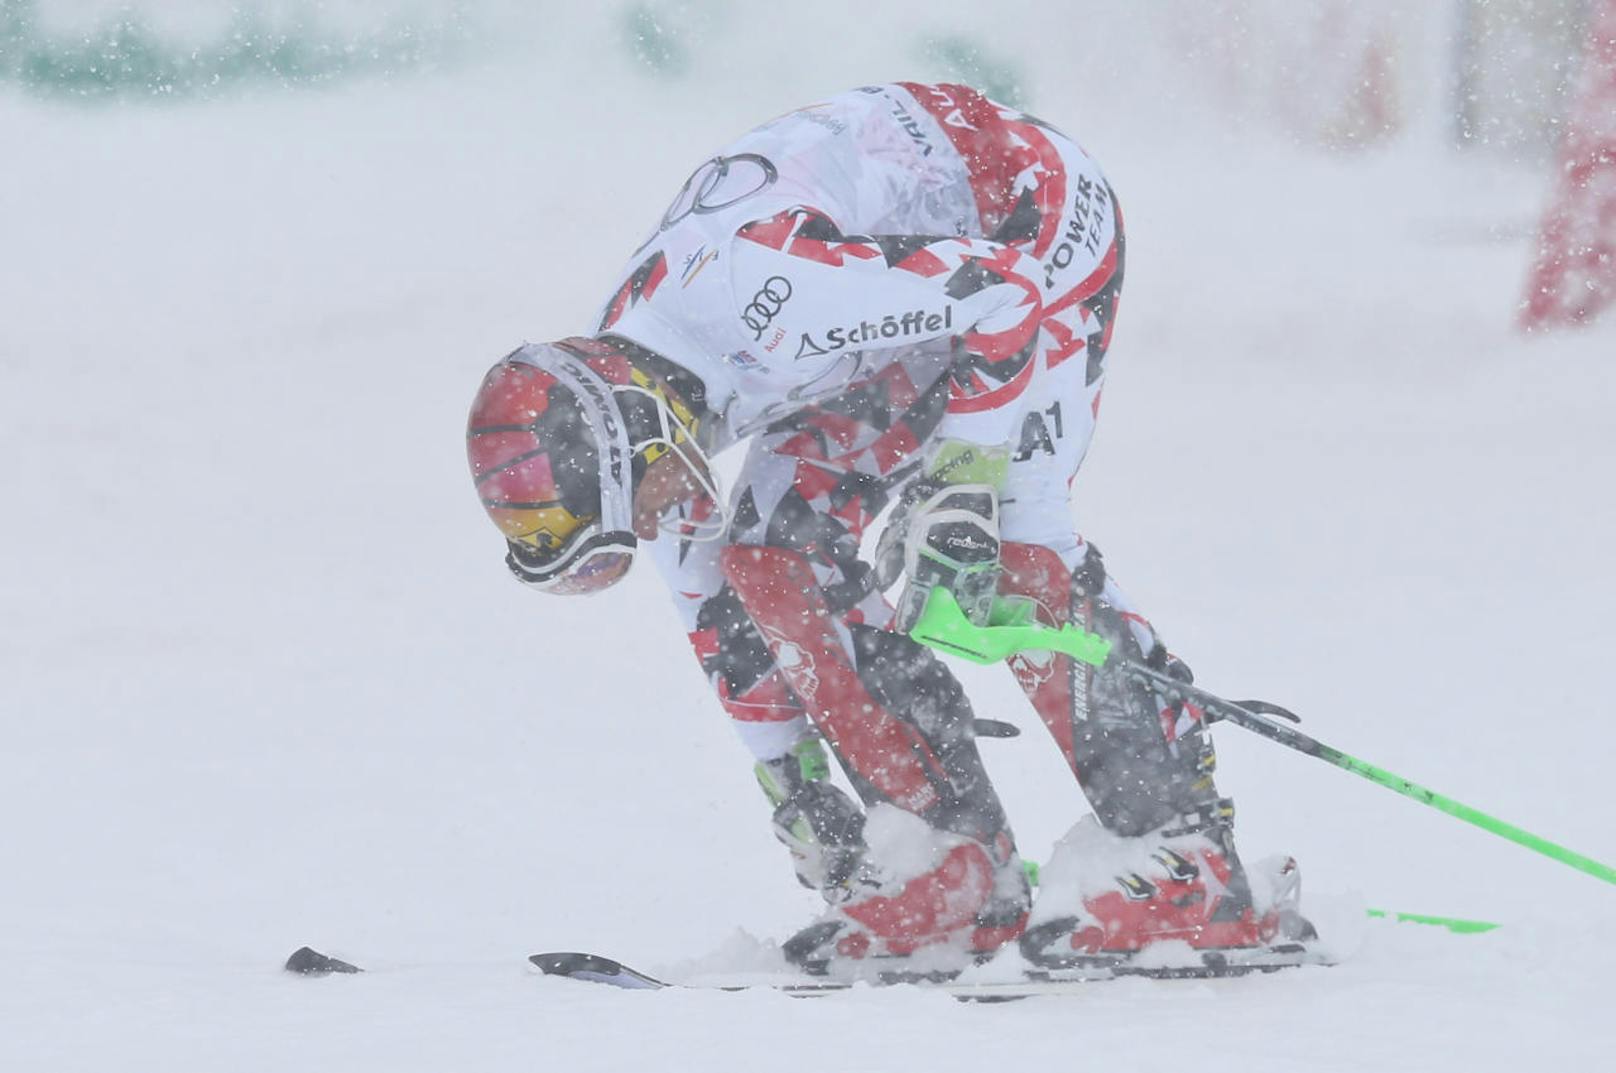 Ein Schock-Moment für Marcel Hirscher 2015! Auf dem Weg zum WM-Titel in Beaver Creek schied der Salzburger im zweiten Slalomdurchgang aus. Doch das machte Hirscher wieder wett, holte den WM-Titel 2017.